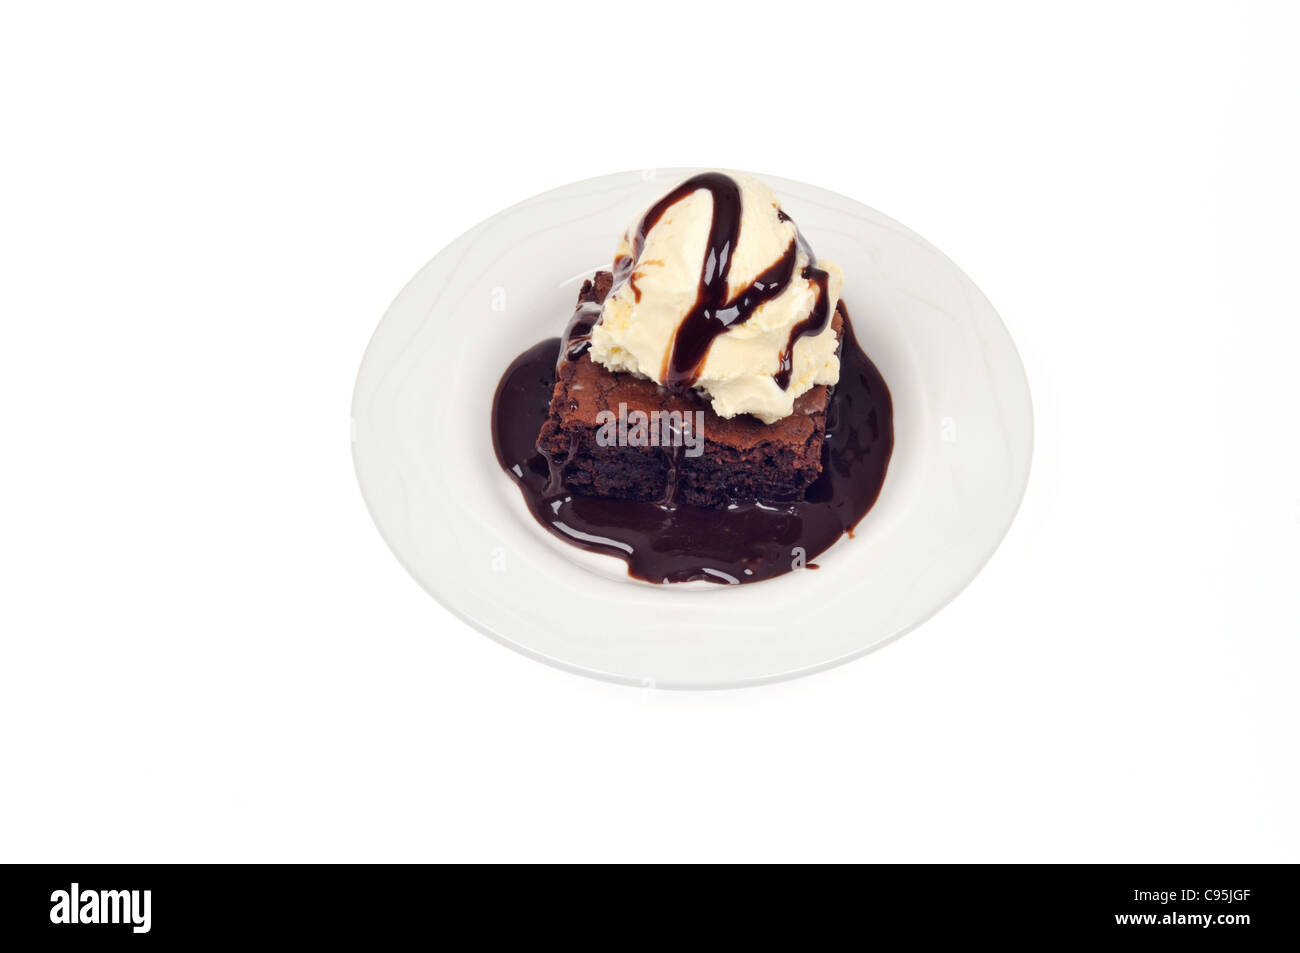 Chocolate Fudge Brownie und Vanille-Eis mit Schokoladensauce auf weißen Teller auf weißem Hintergrund Ausschnitt. Stockfoto